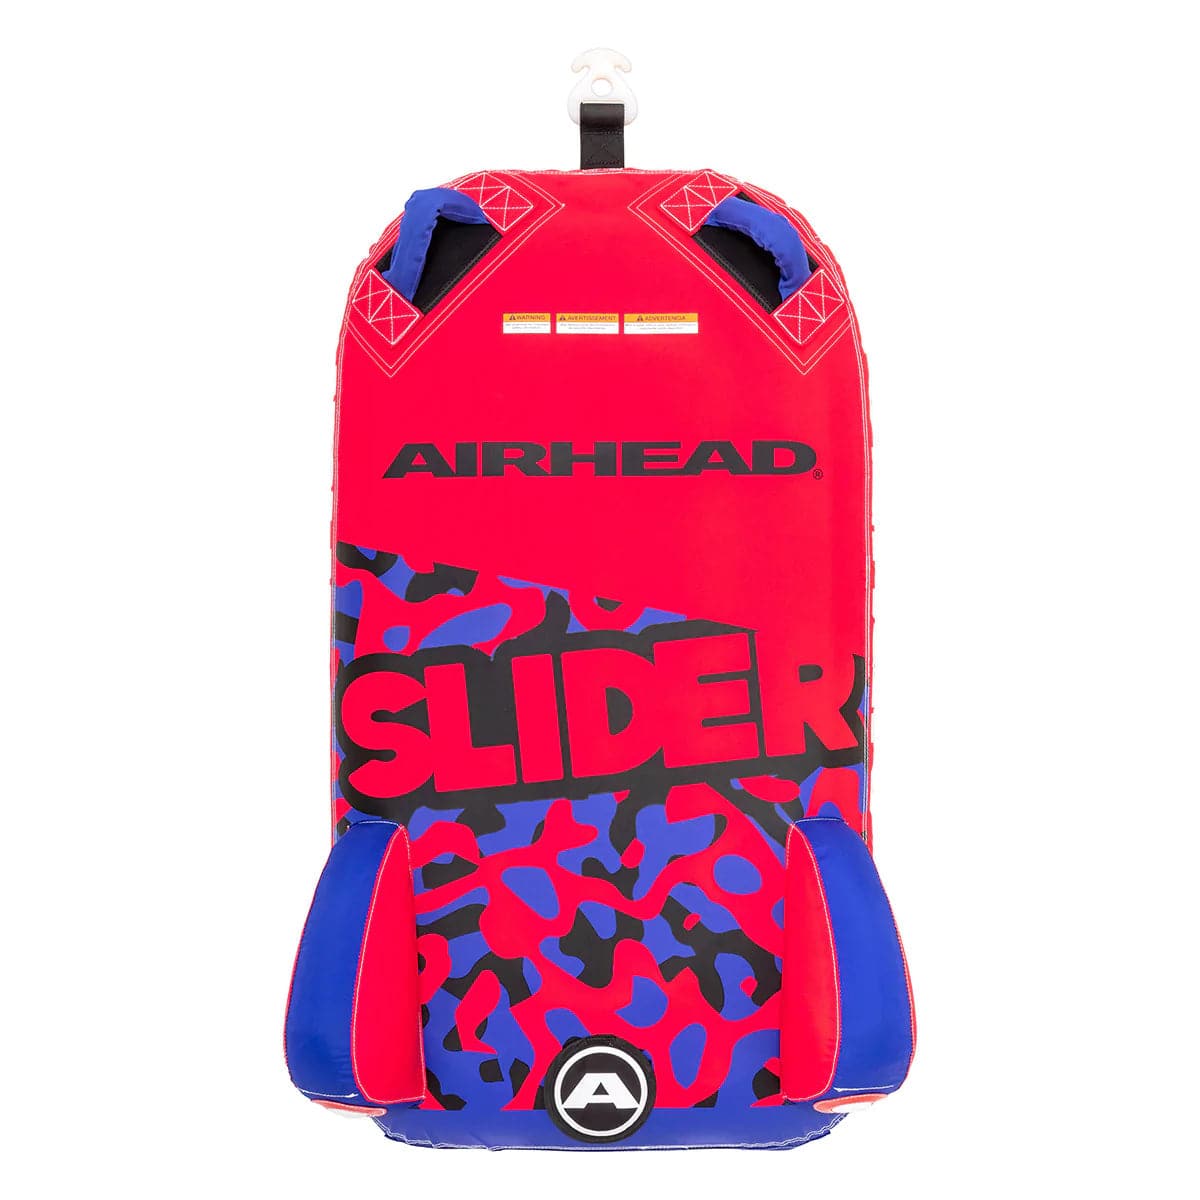 AIRHEAD SLIDER - 1 RIDER